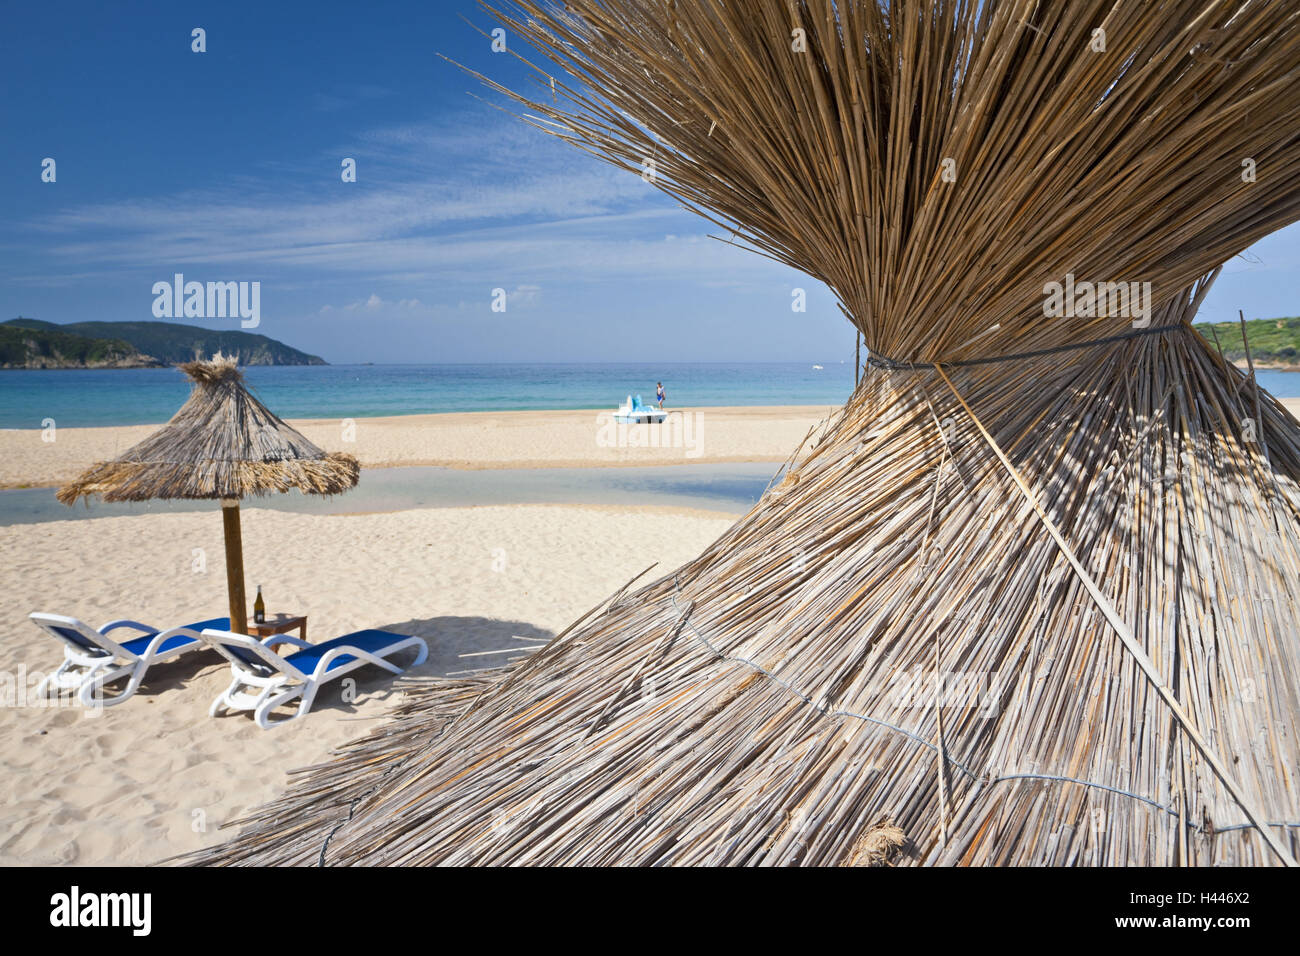 Francia, Corsica, spiaggia, Capu Rossu, Plage d'Arone, sedie a sdraio, ombrelloni Foto Stock